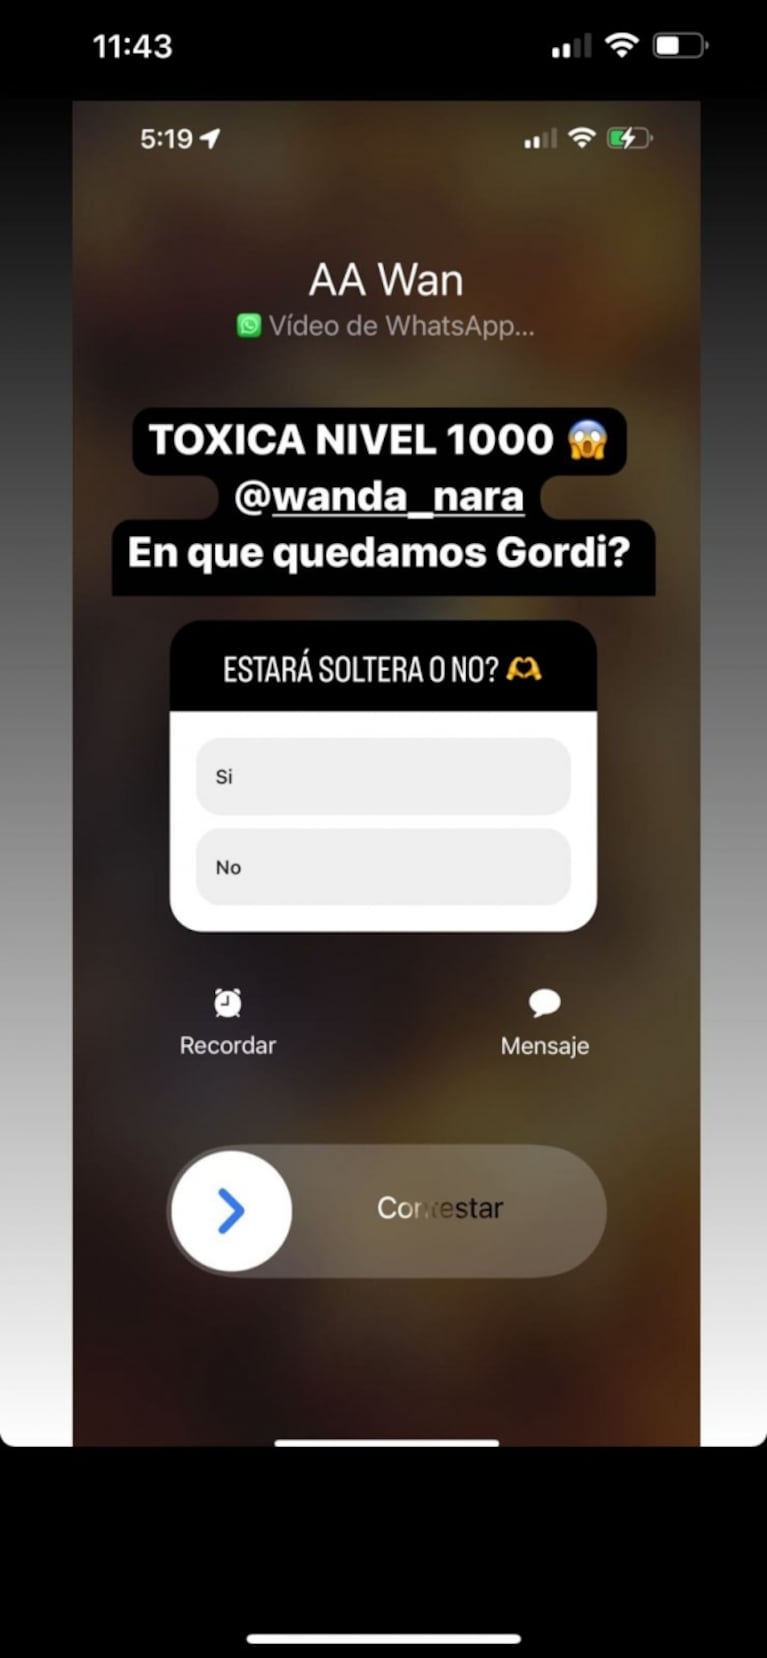 Mauro Icardi publicó sus escandalosos chats con Wanda Nara y después los borró: "Tóxica nivel mil"